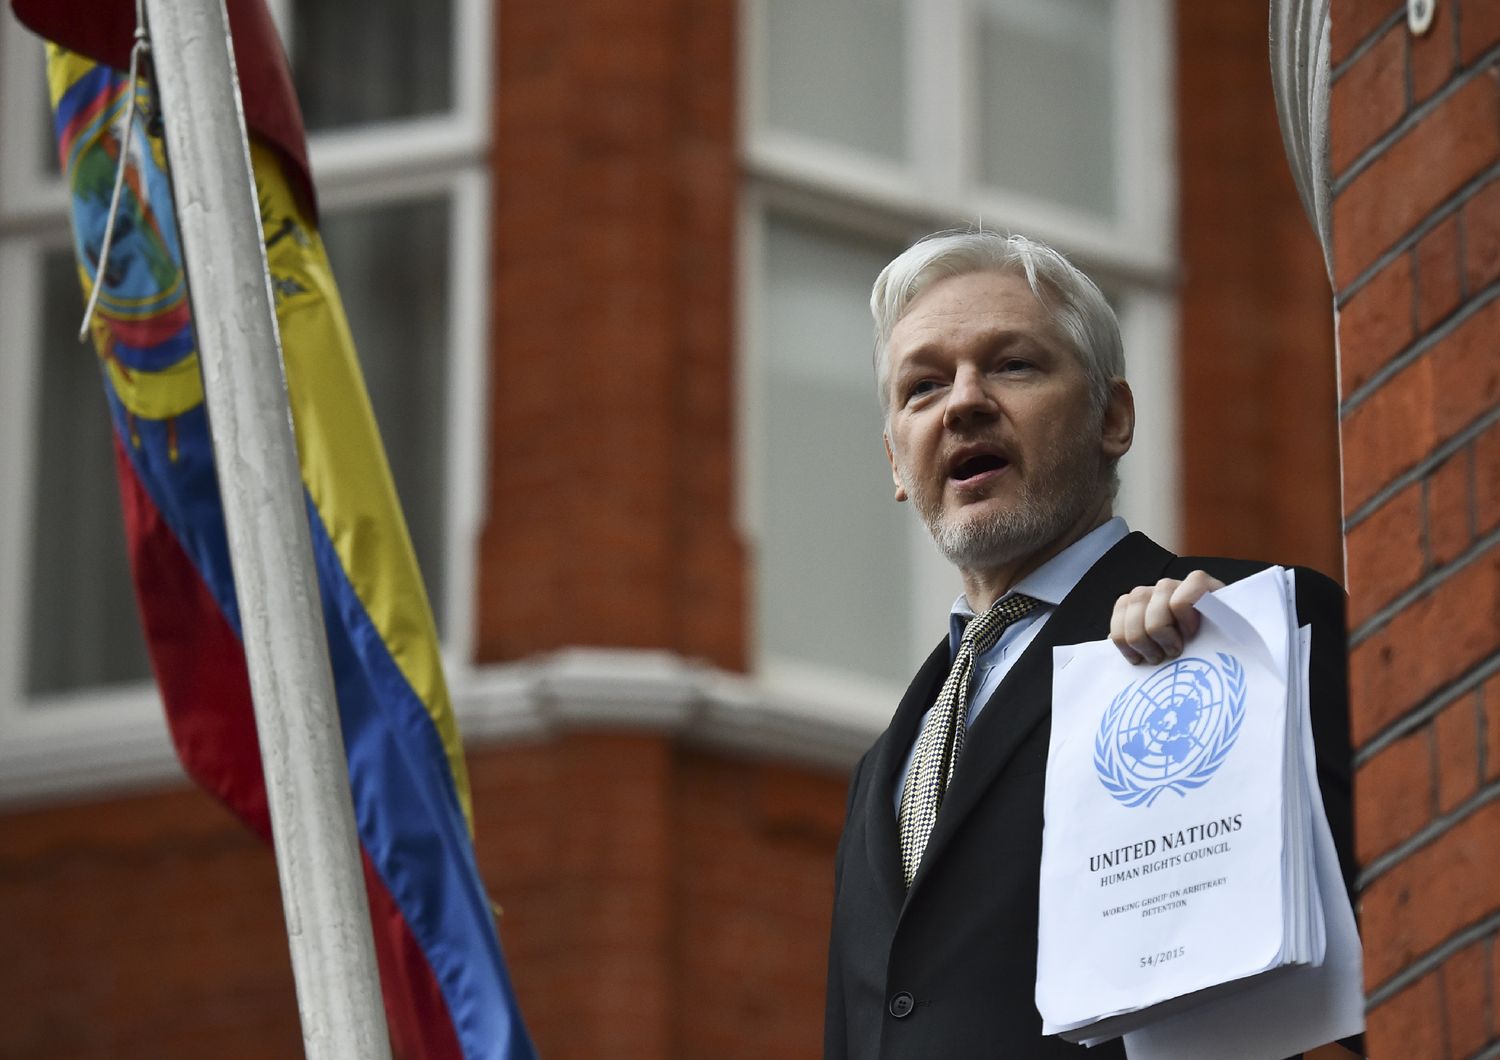 Julian Assange non ha stuprato nessuno. Ma rischia ancora il carcere